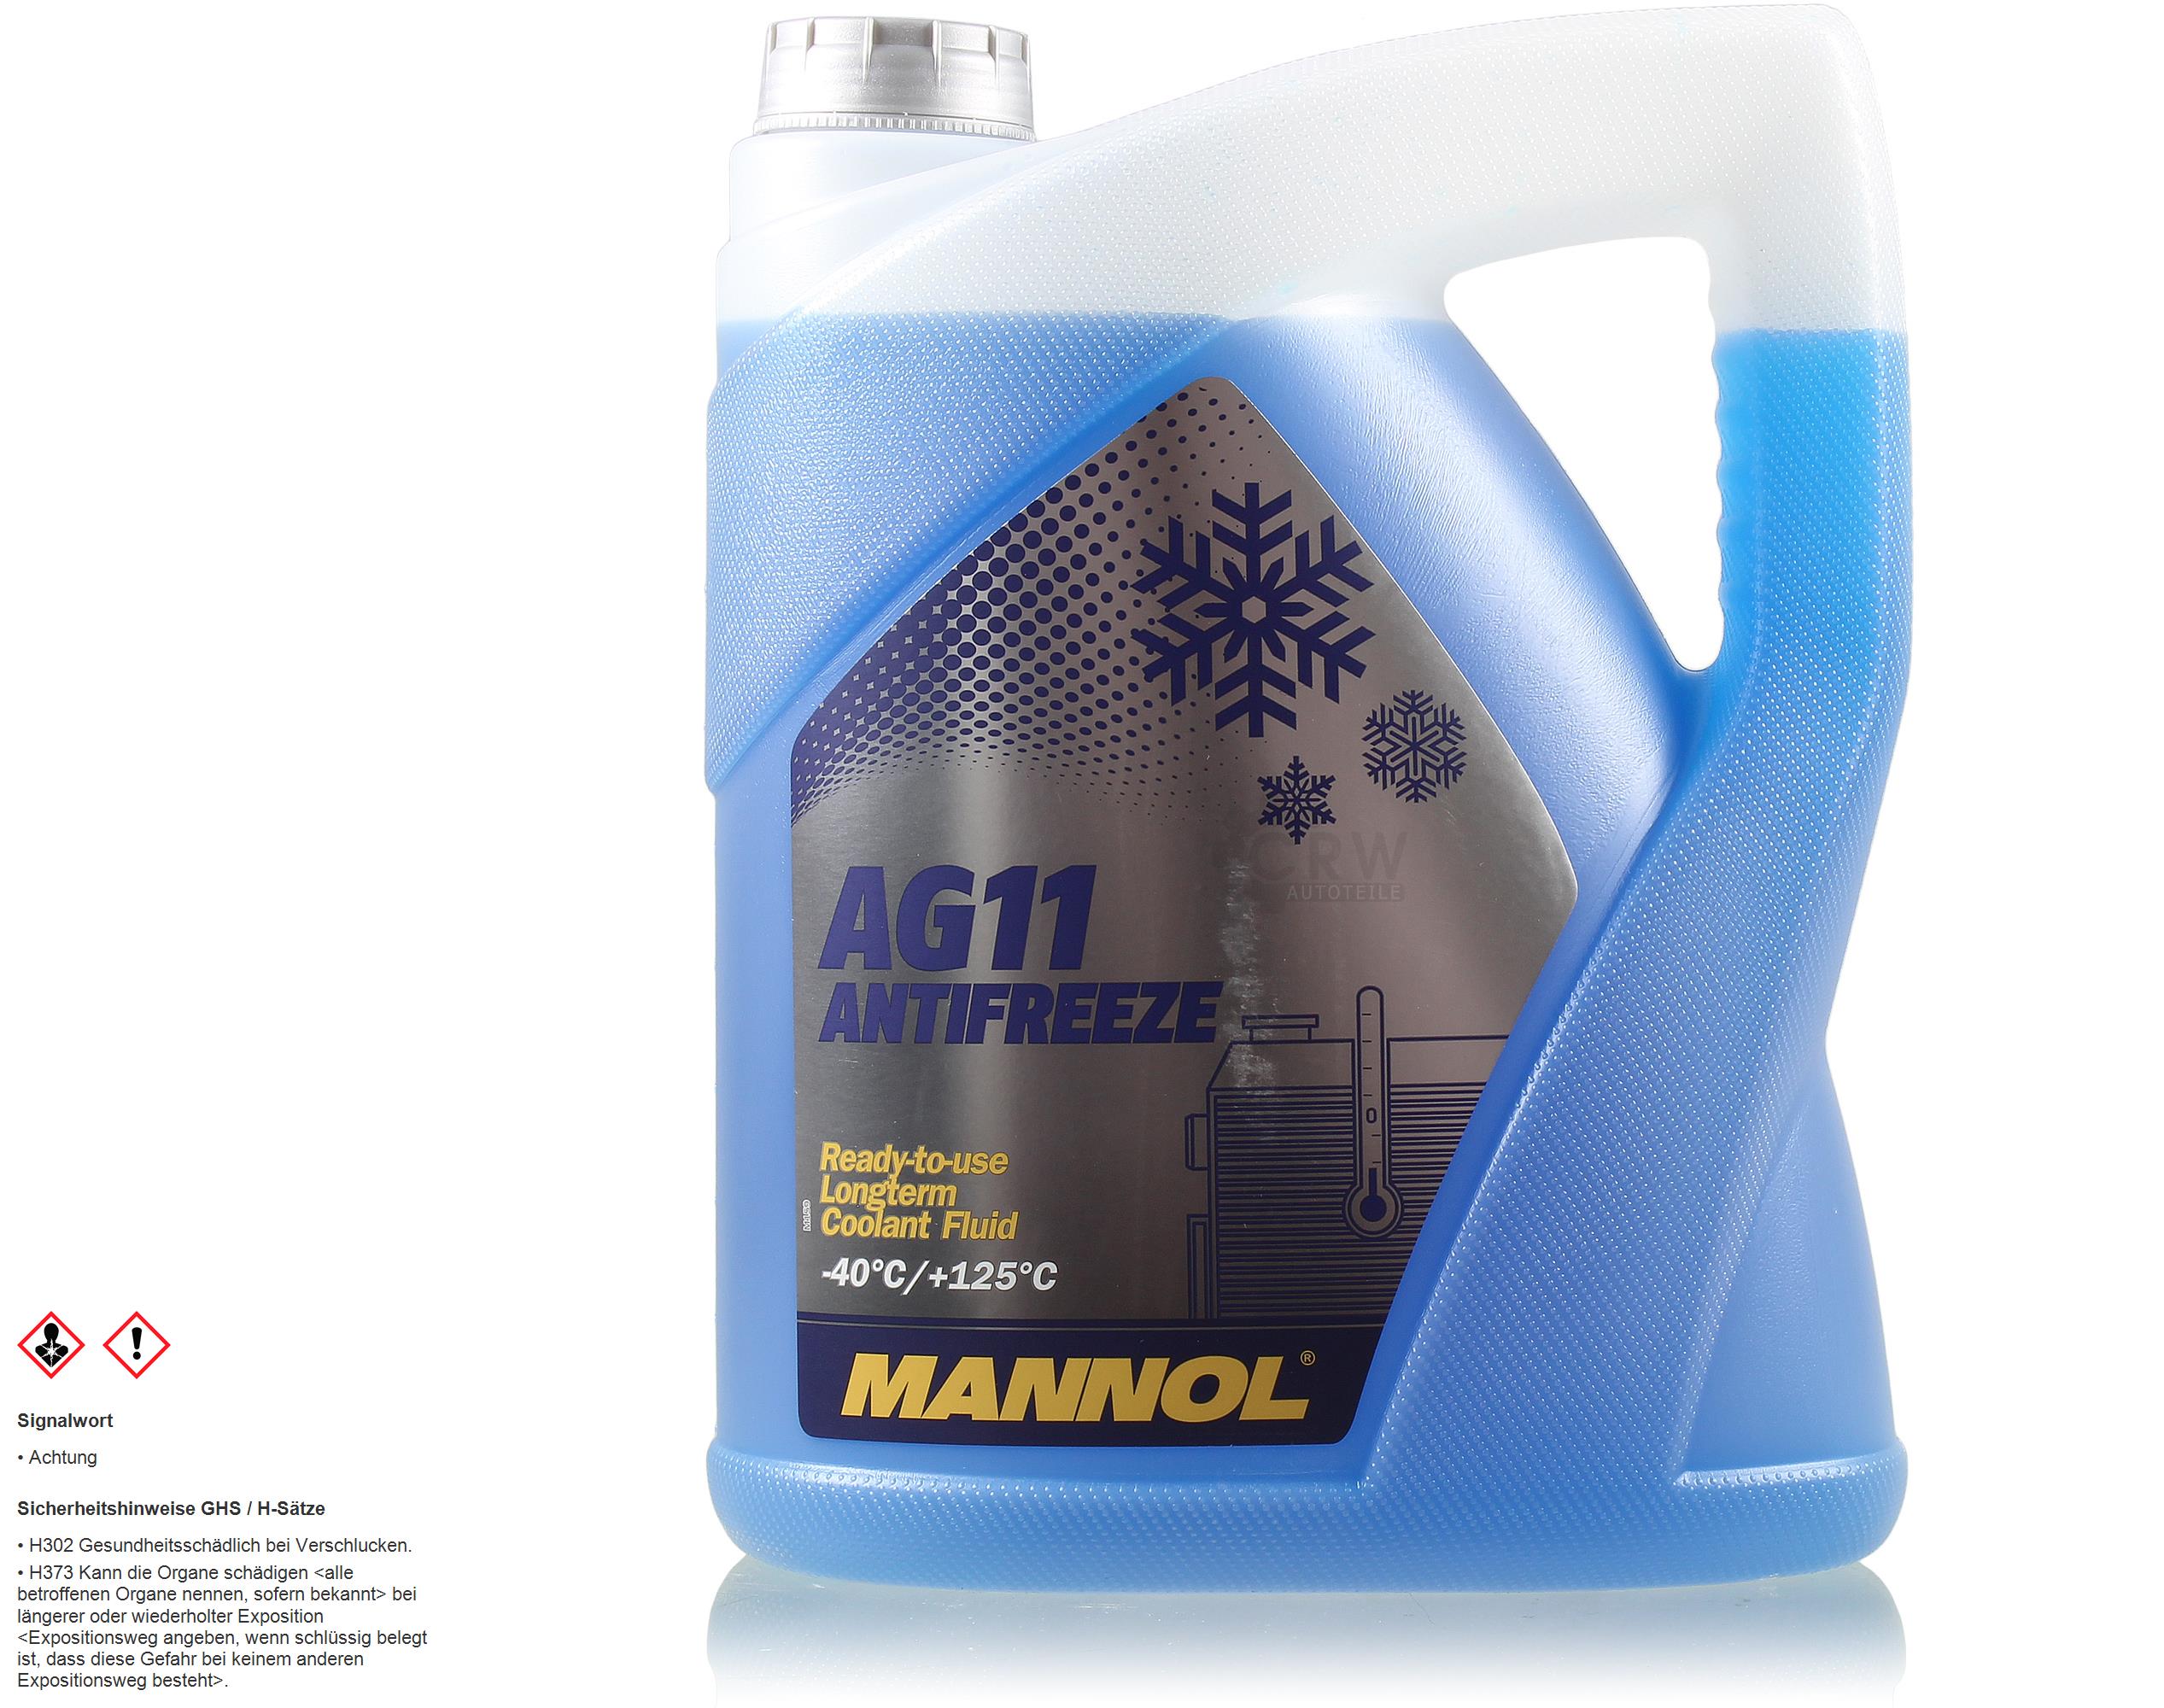 5 Liter MANNOL Kühlerfrostschutz Longterm Antifreeze AG11 -40°C blau Typ G11